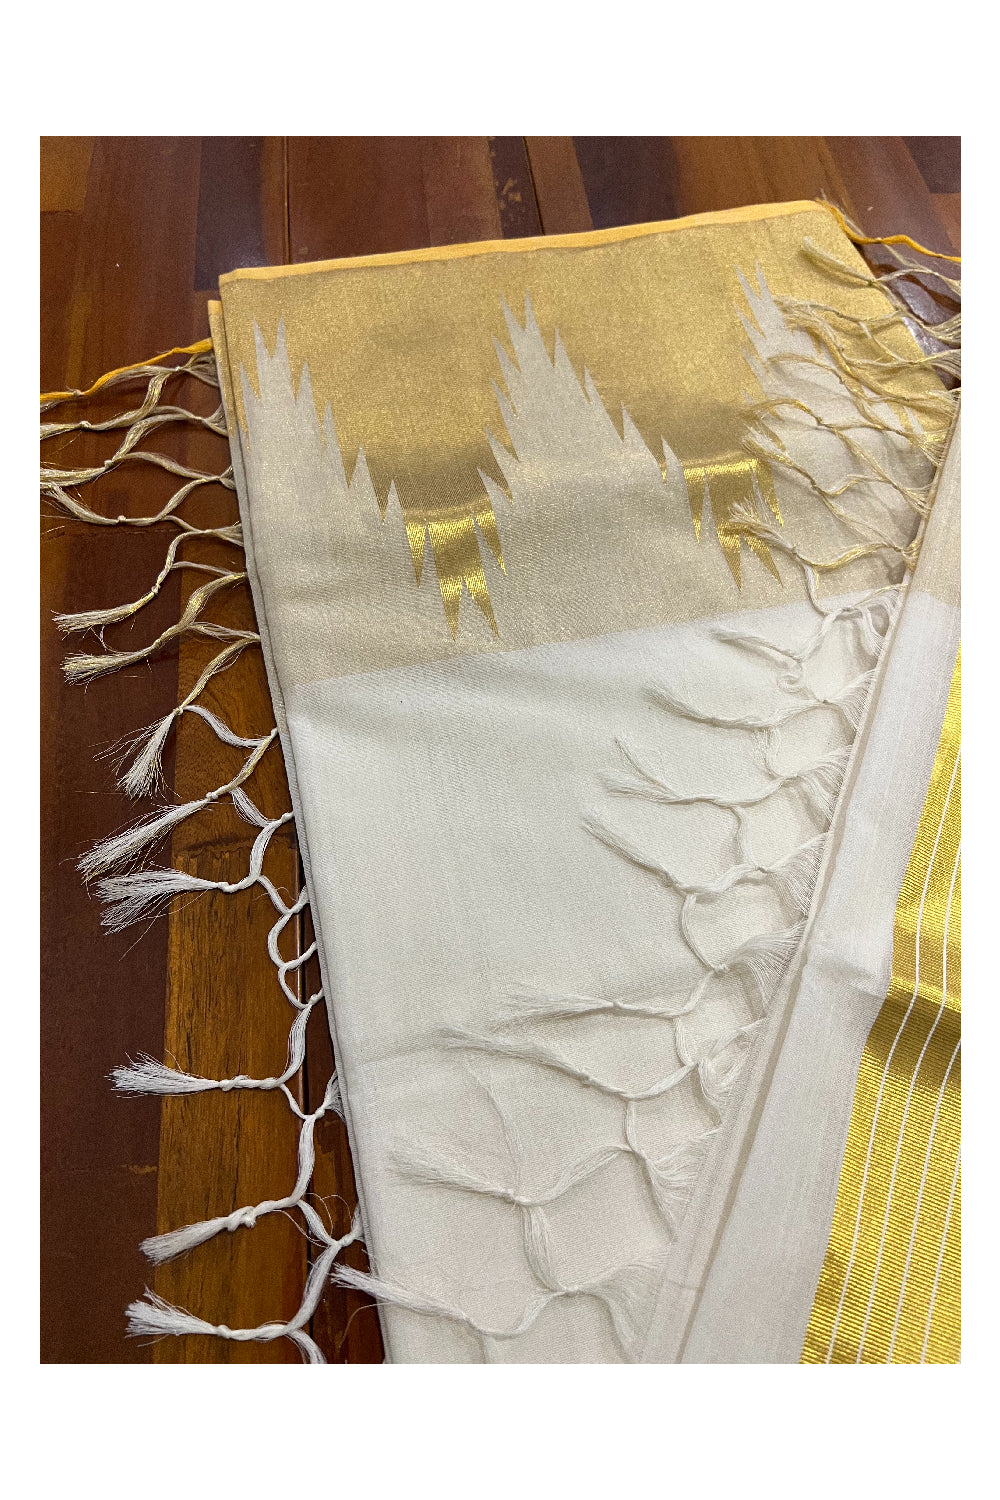 Southloom™ Original Handloom Kasavu Cotton Saree with Unique Temple Design Border